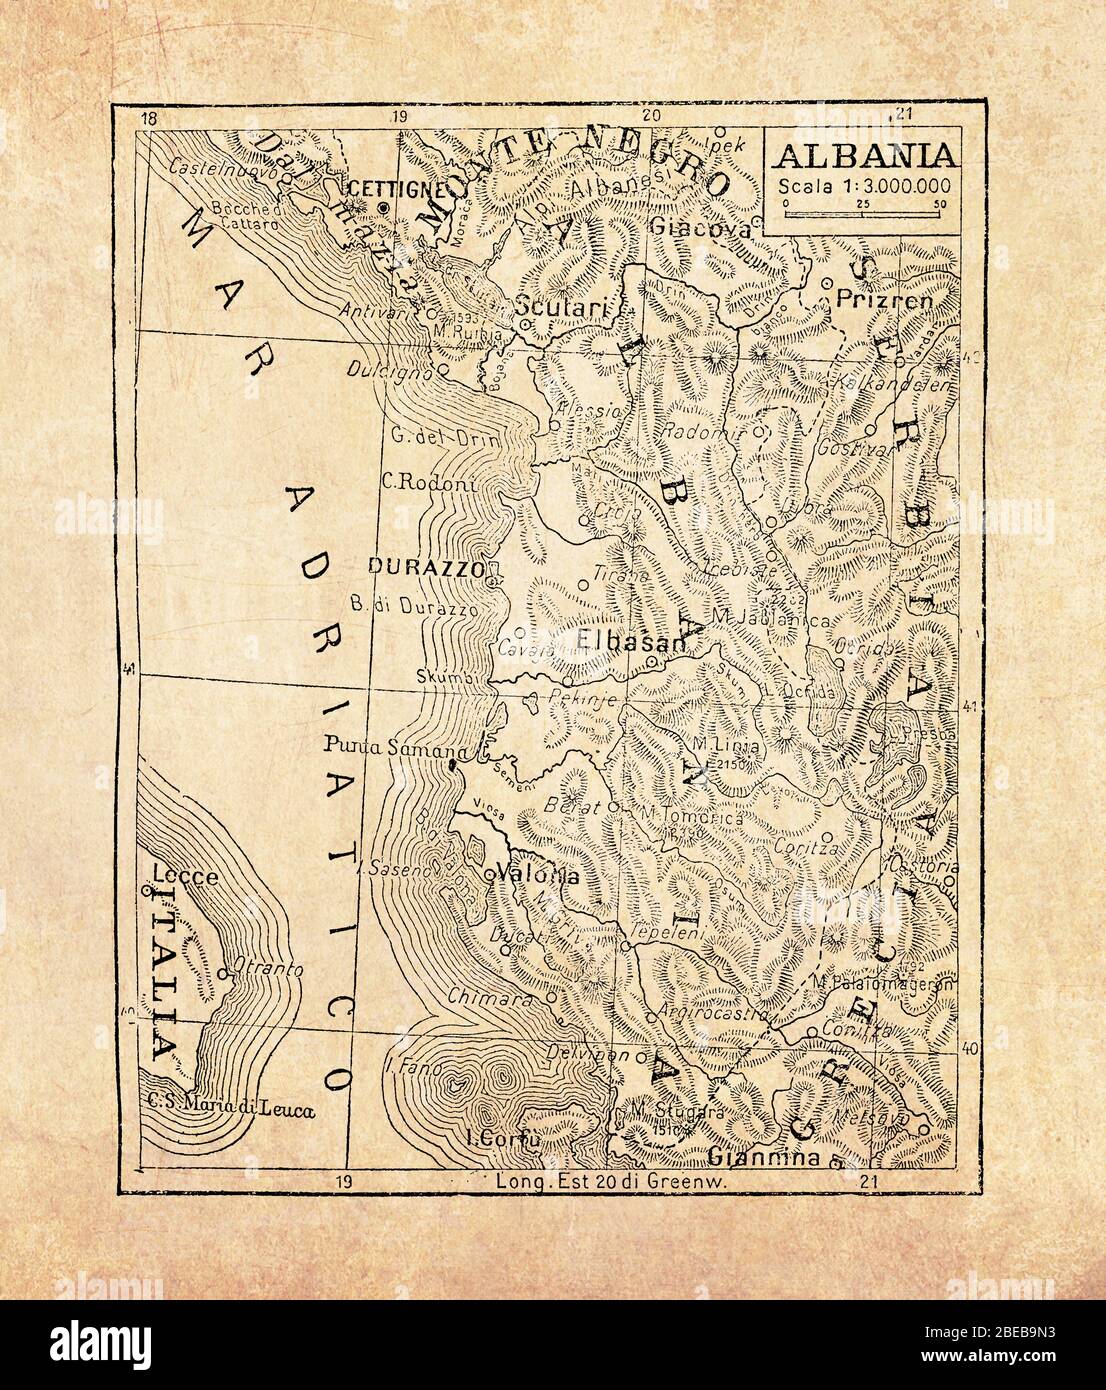 Alte Karte von Albanien Land in Südosteuropa an der Adria und Ionisches Meer mit geografischen italienischen Namen und Beschreibungen Stockfoto